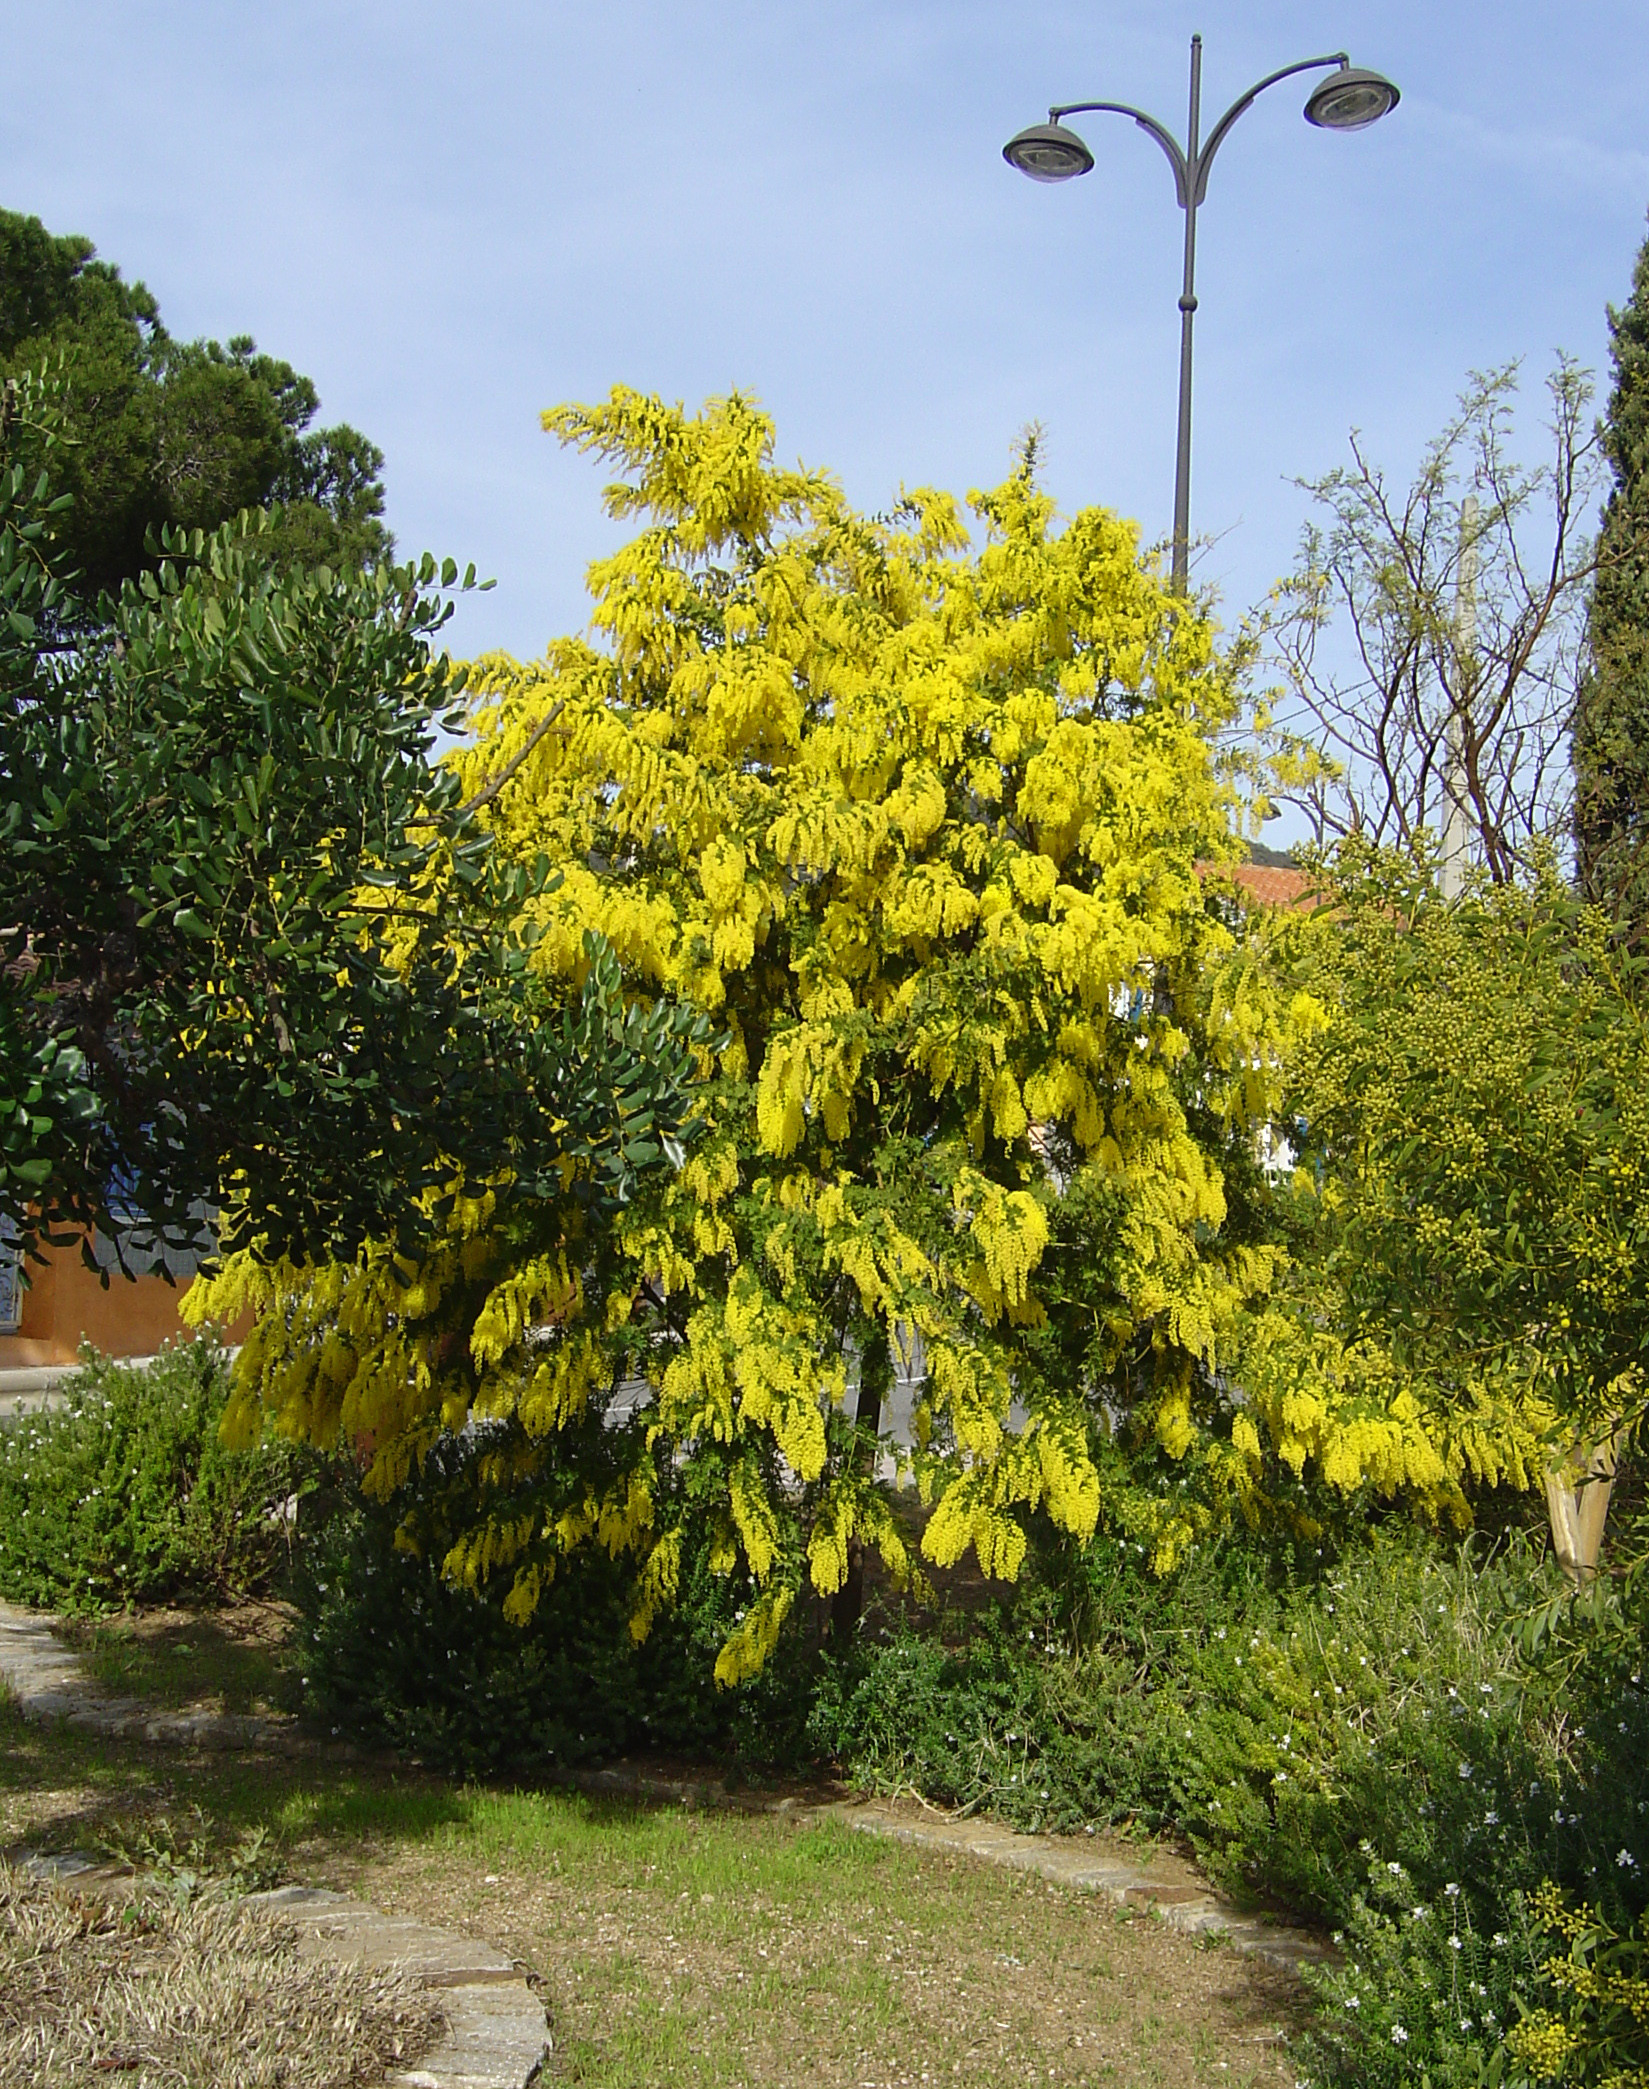 Acacia pubescens